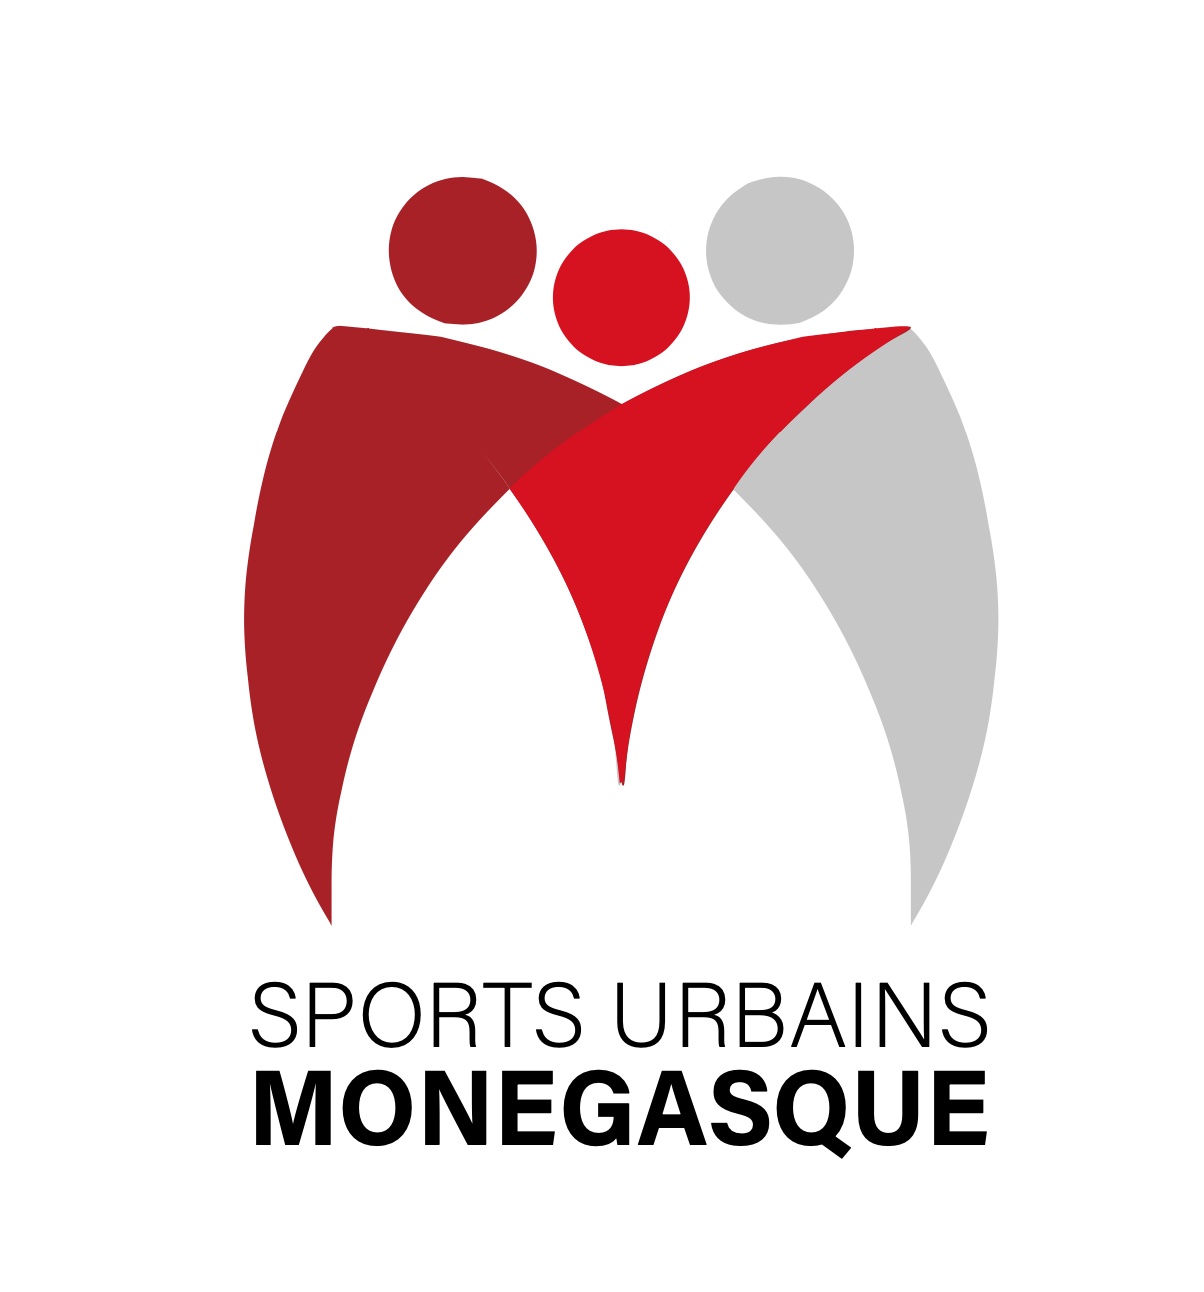 Sport Urbains Monegasque.jpg